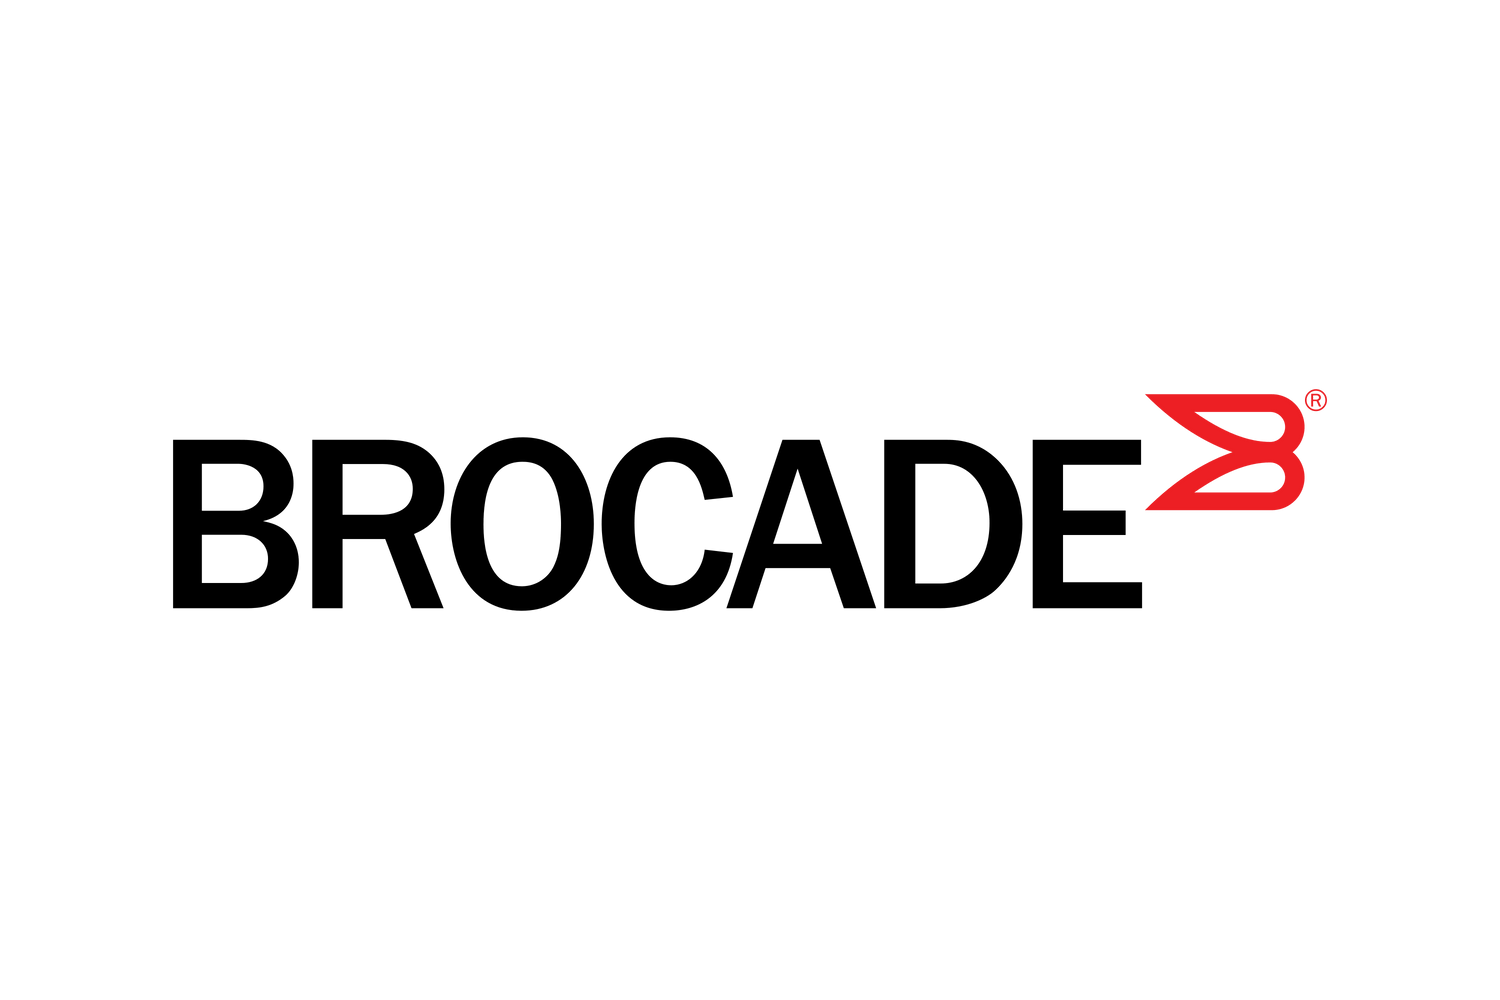 FCX624-E - Brocade FastIron CX 624 Switch